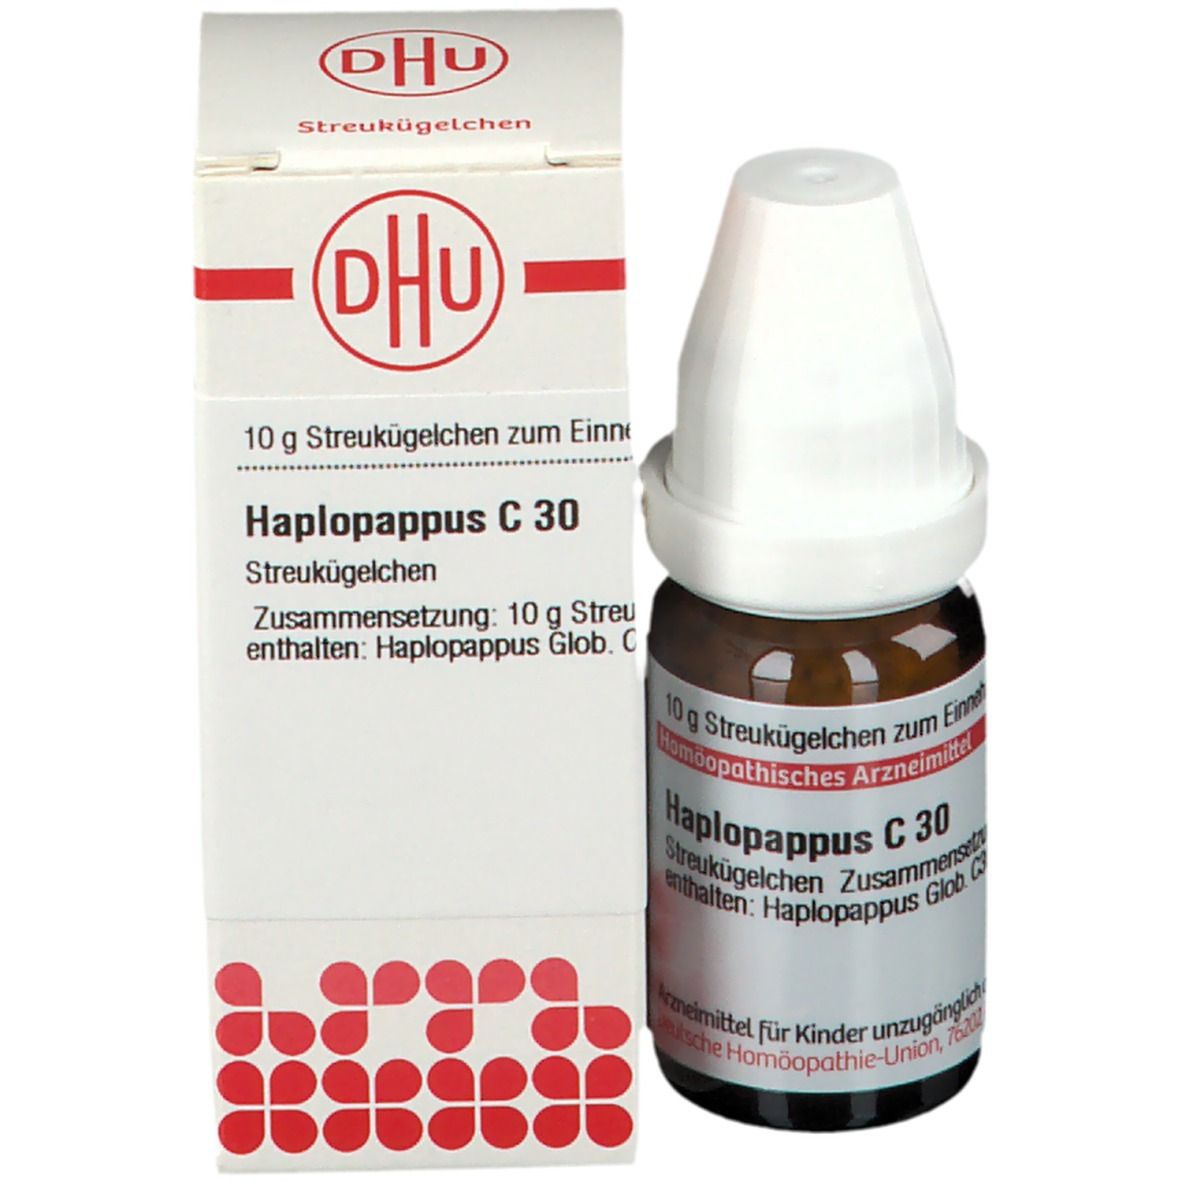 DHU Haplopappus C30